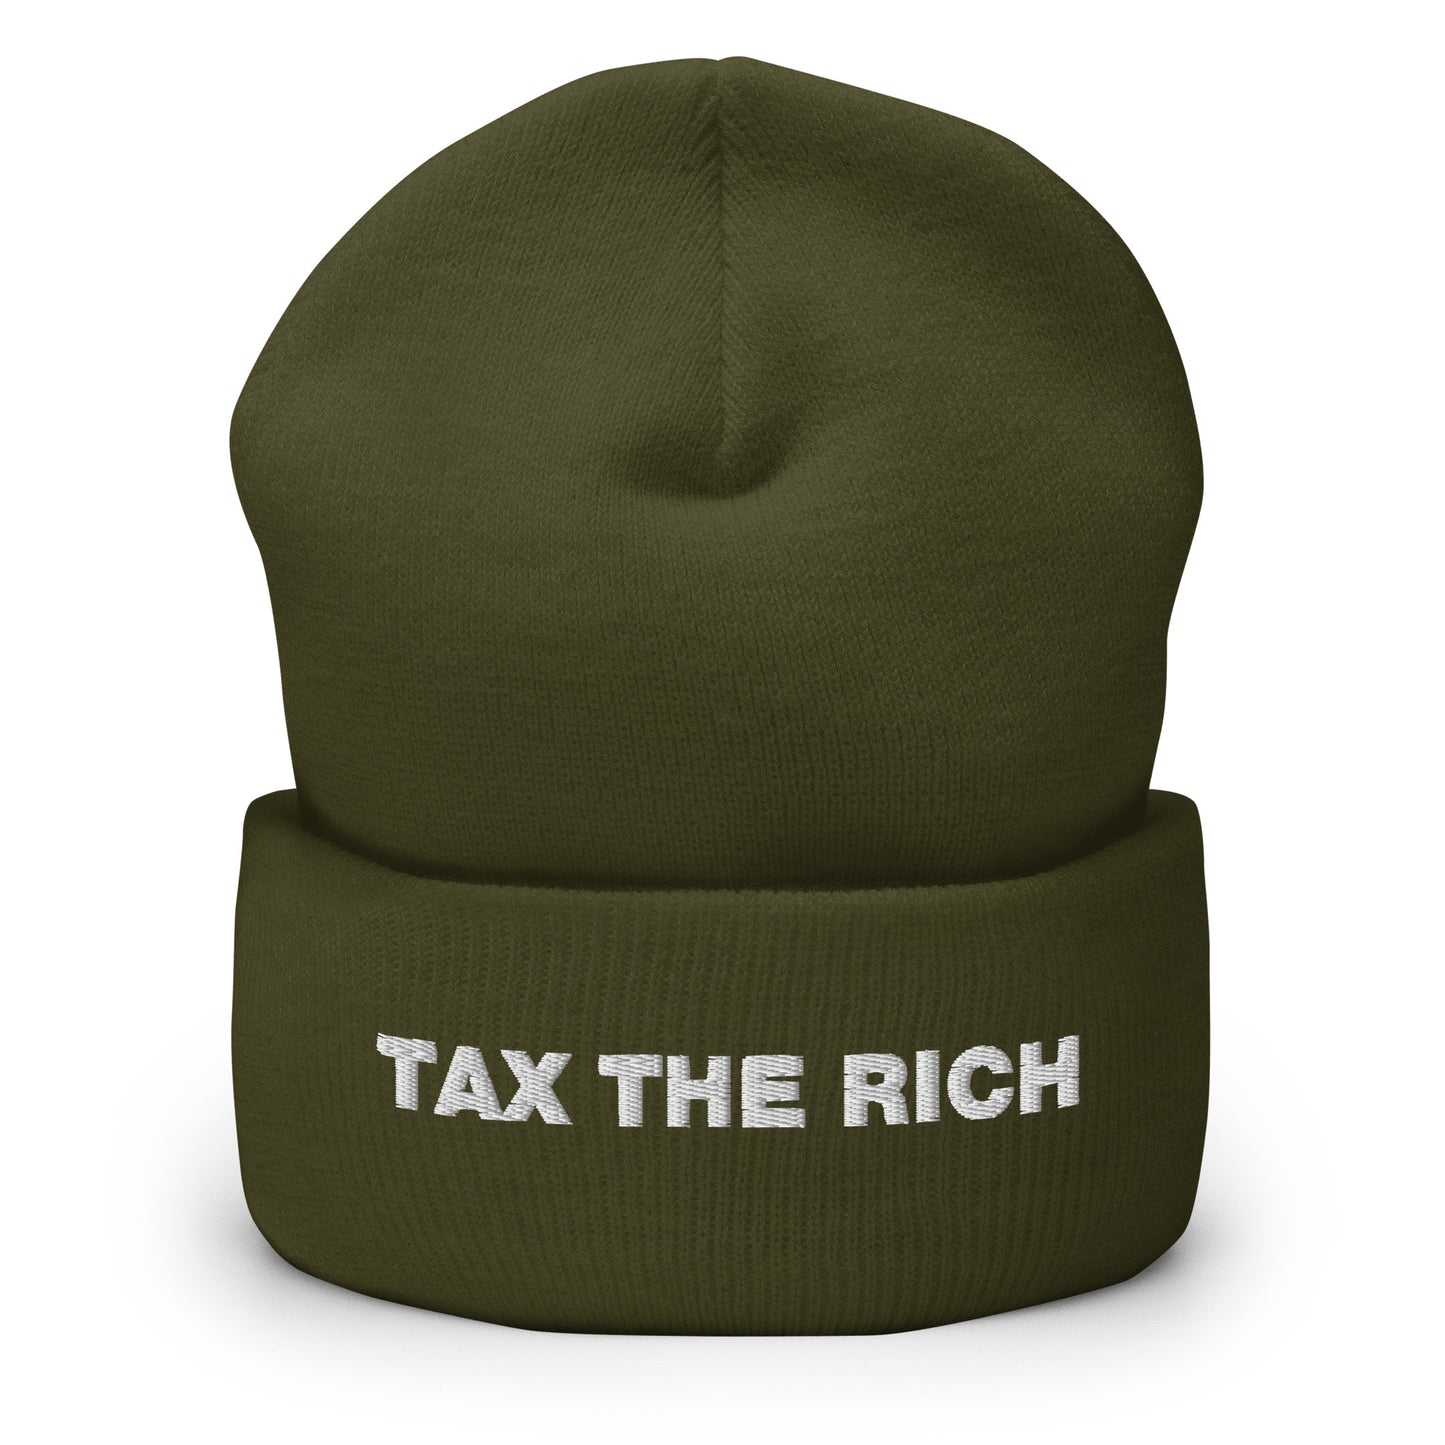 Tax the Rich Text Cuffed Beanie